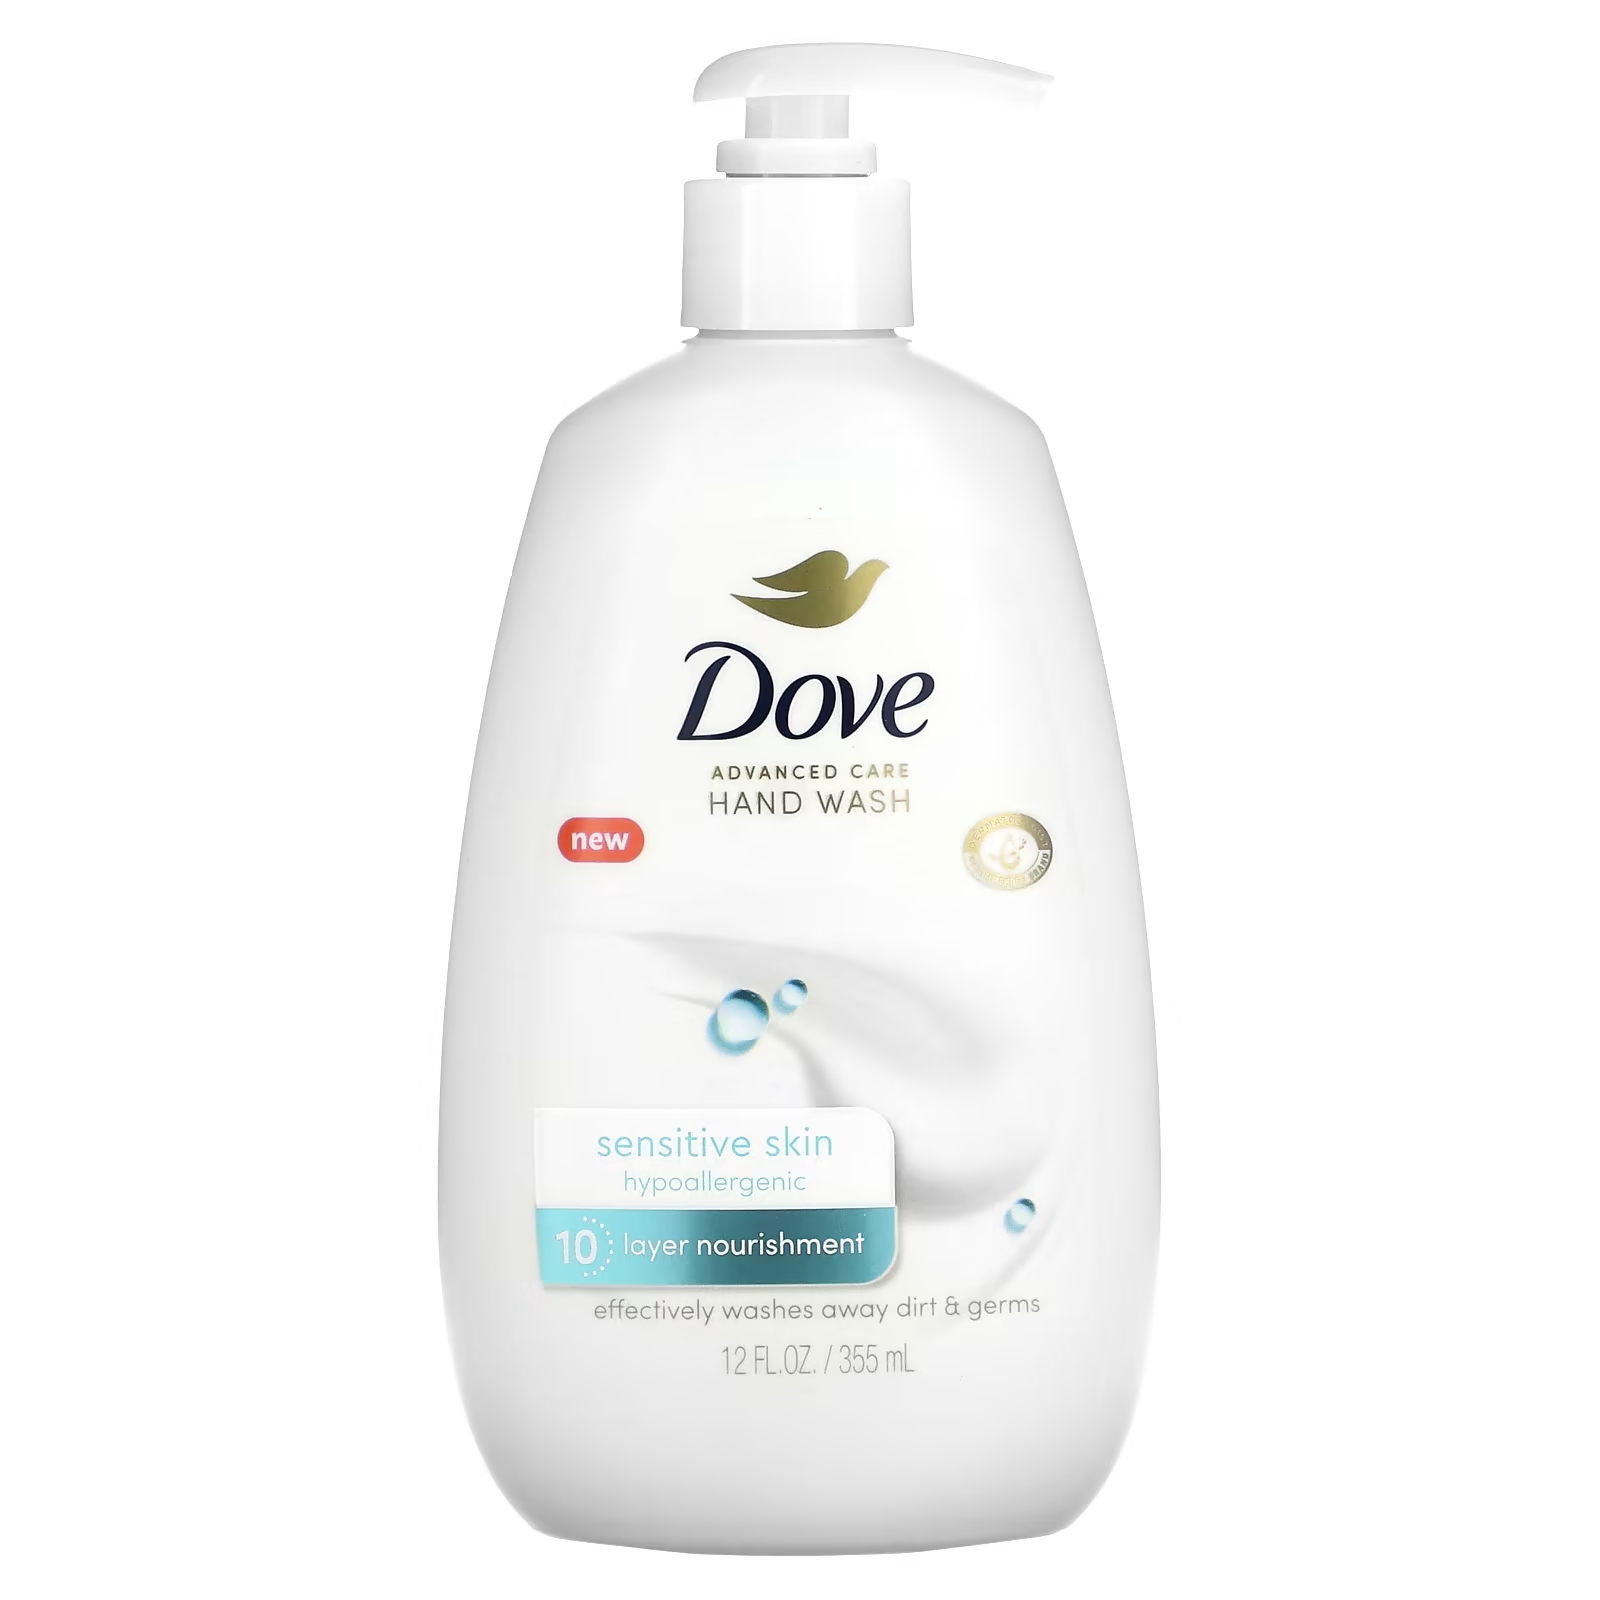 Жидкое мыло для рук Dove Advanced Care чувствительная кожа, 355 мл цена и фото